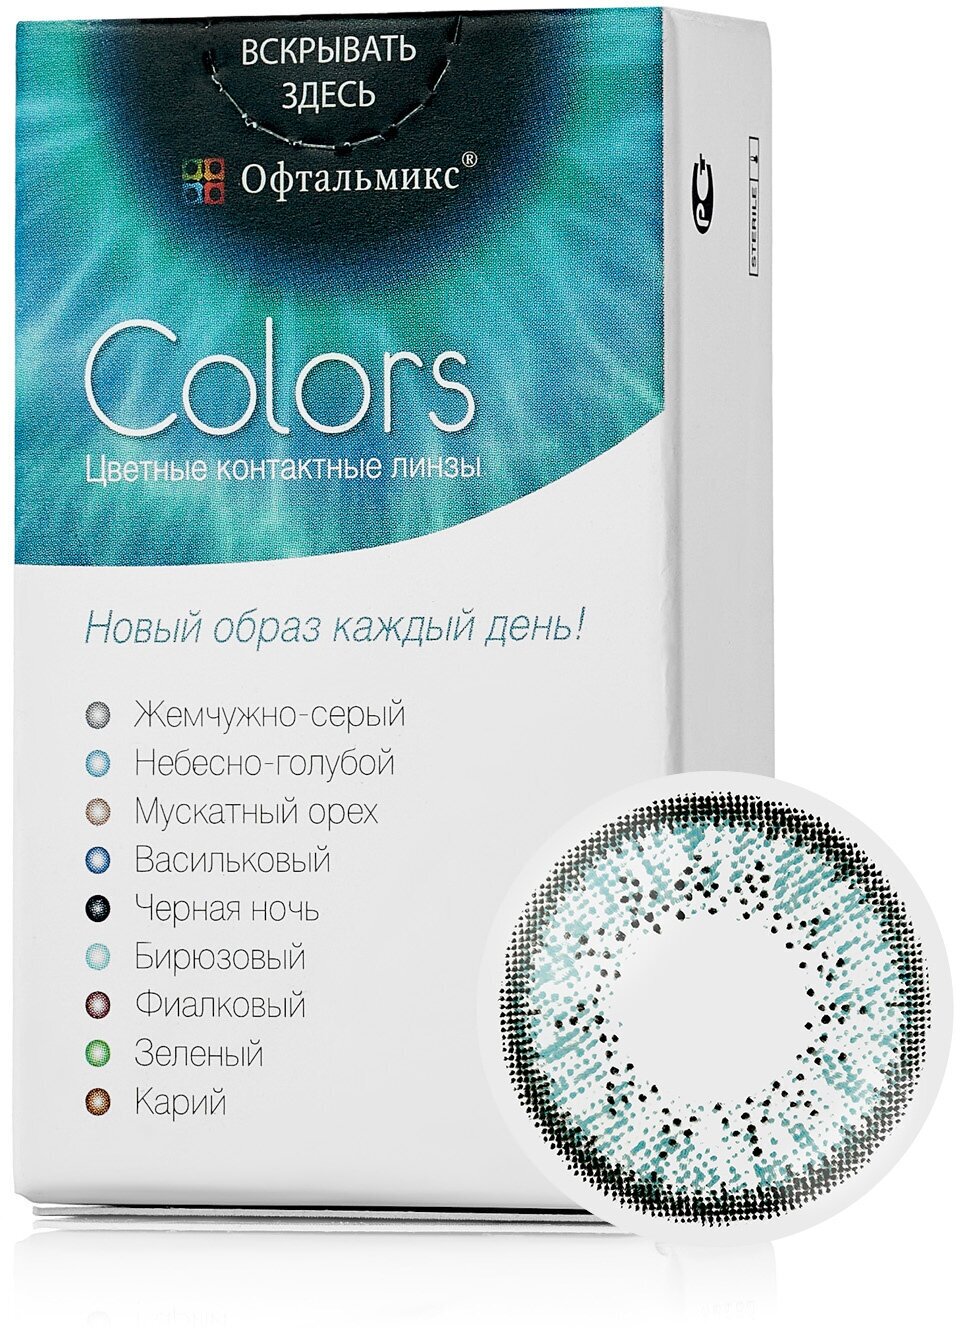 Цветные контактные линзы Офтальмикс Color Sky blue (небесно-голубой) R8.6 -5.0D (2шт.)